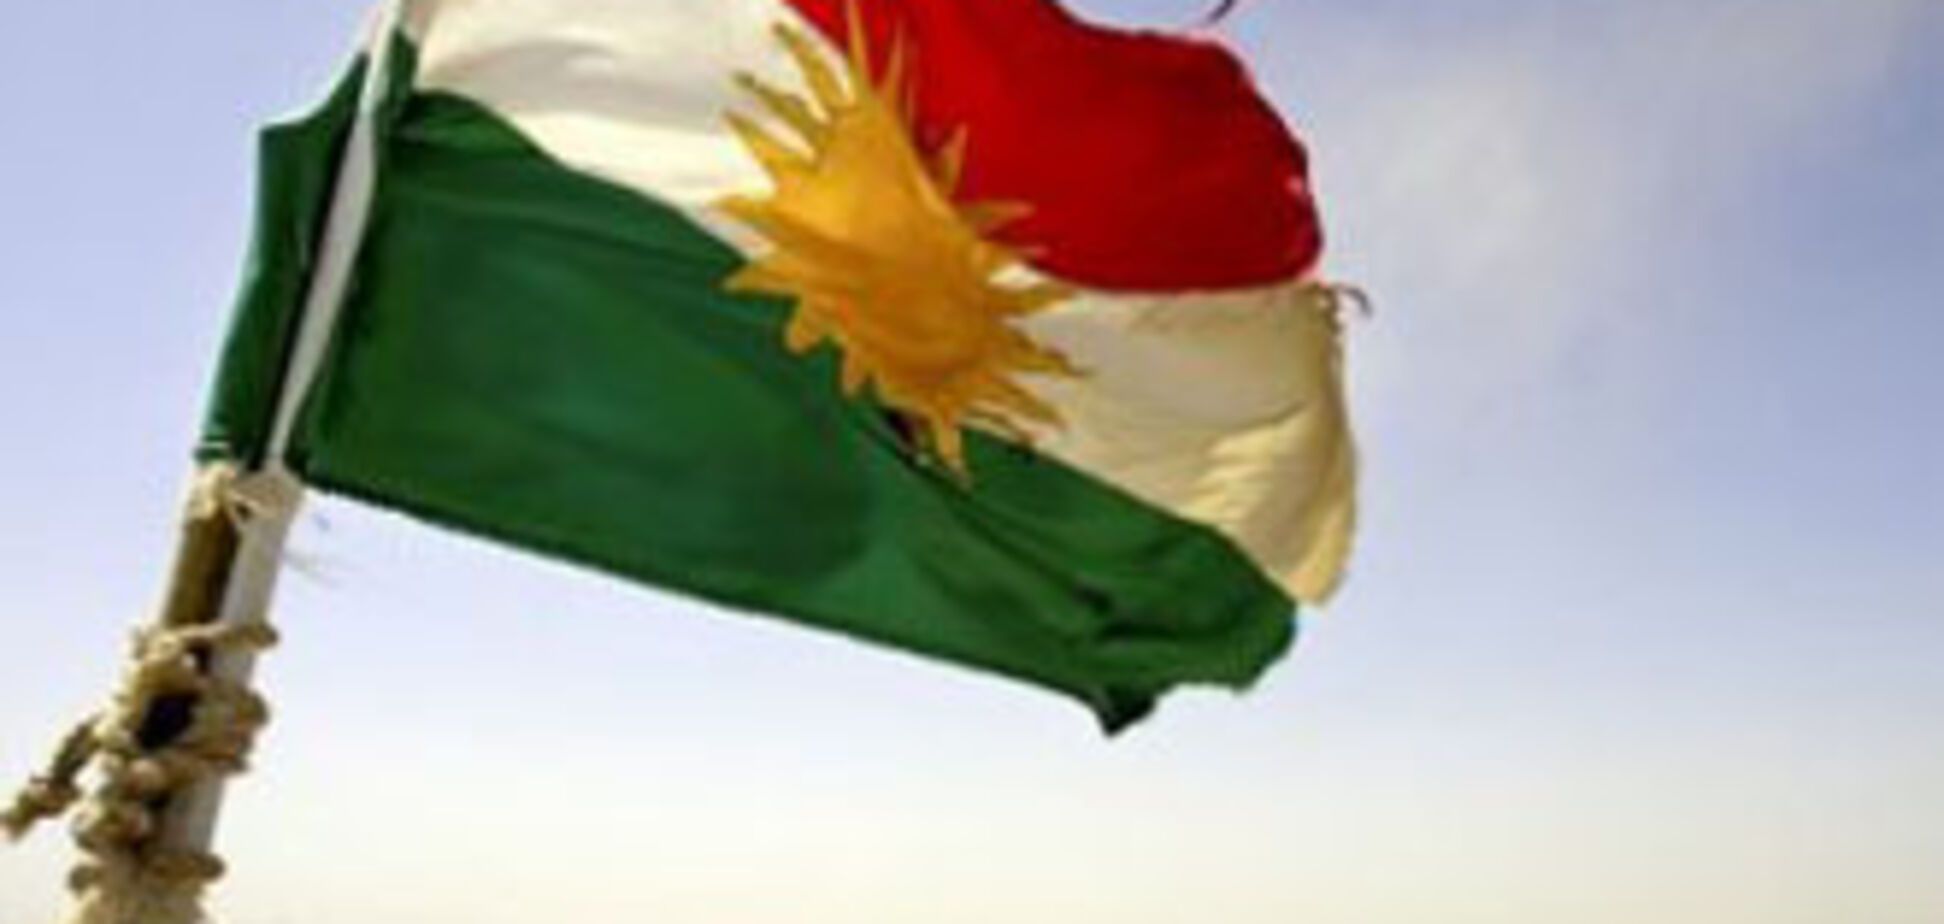 Полиция не захотеля связываться с демонстрацией курдов